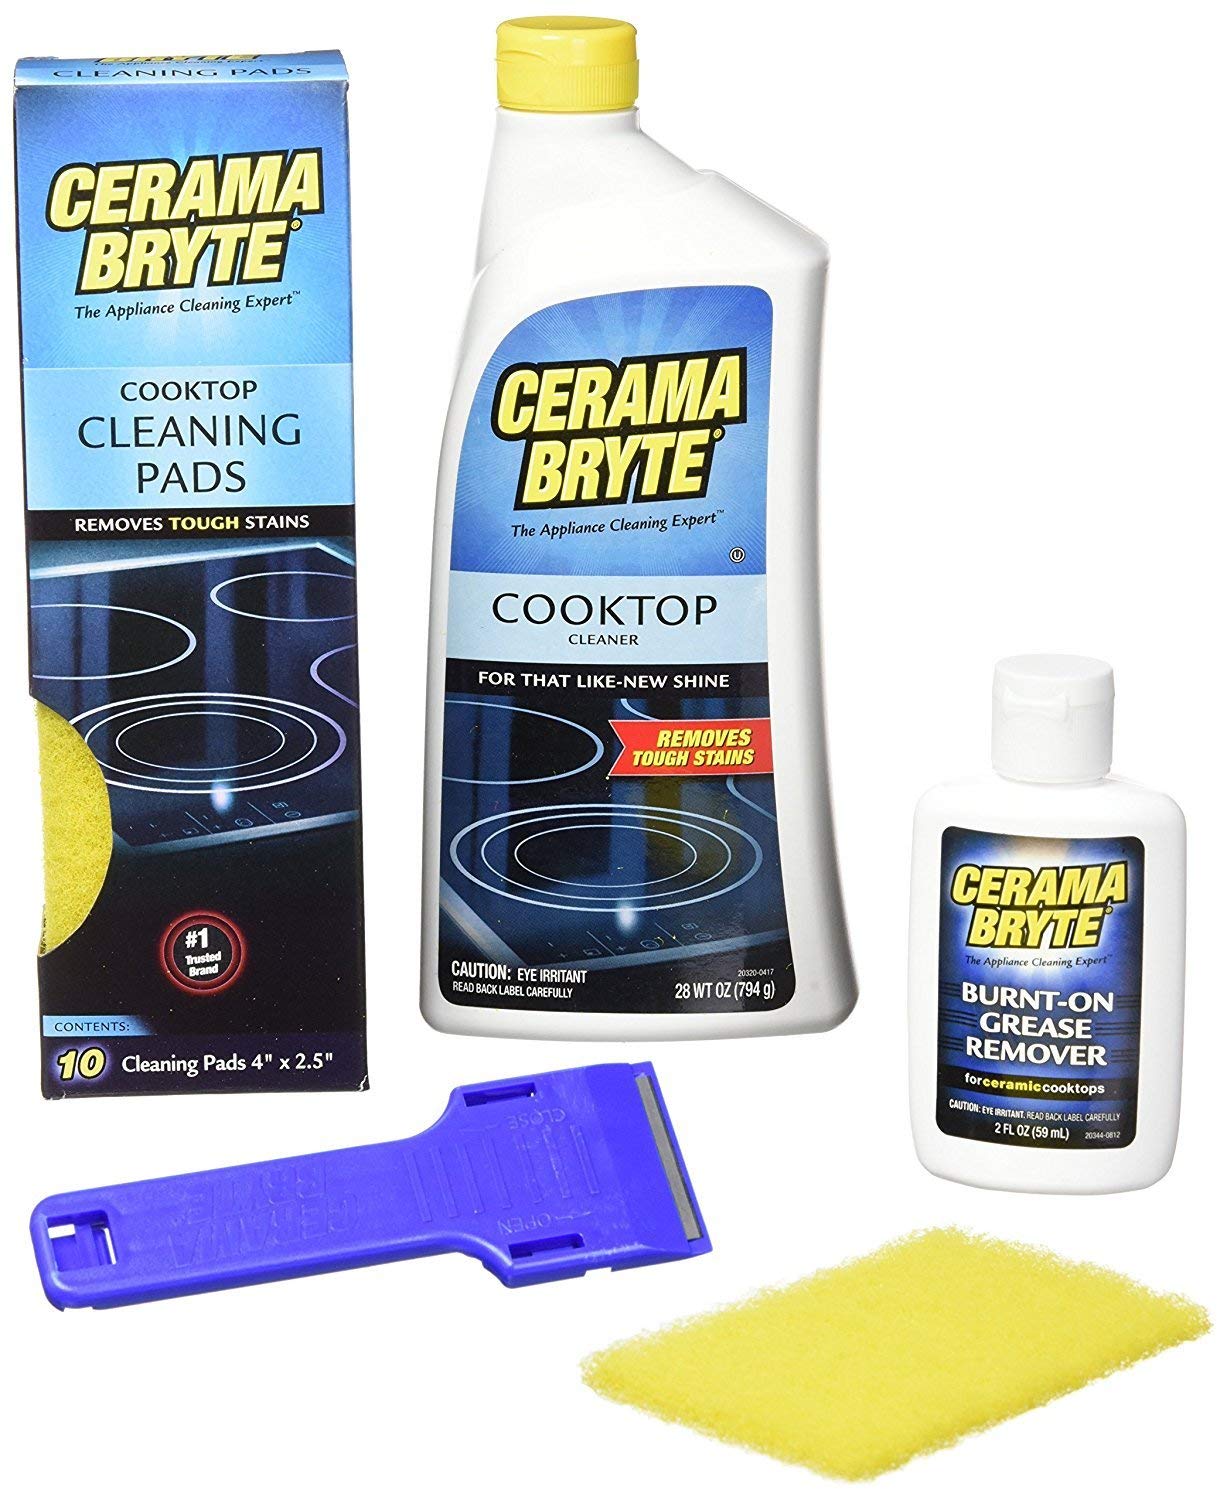 CeramaBryte Best Value Kit: Ceramic Cooktop Cleaner